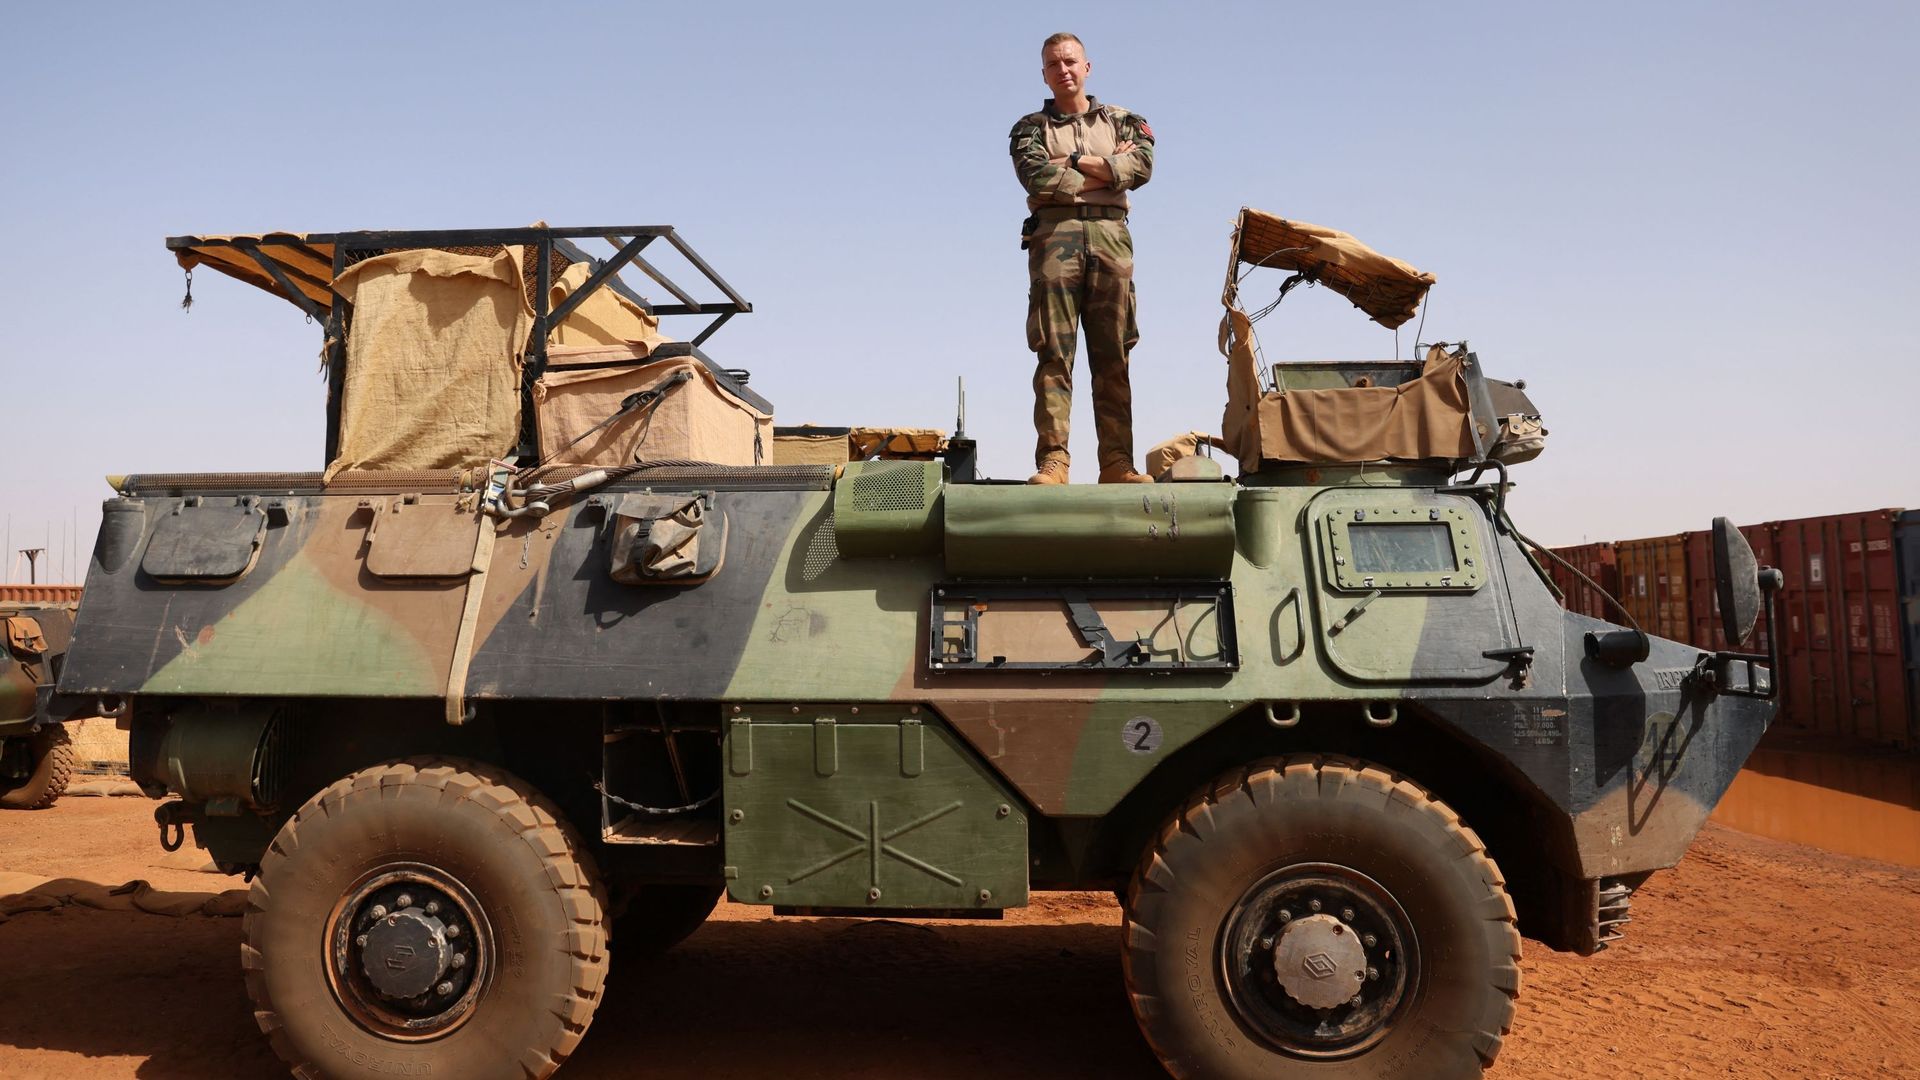 Soldat français, le capitaine François-Xavier du 2e REP posant devant des véhicules blindés dans la base militaire de Gao, dans le nord du Mali, le 4 décembre 2021.